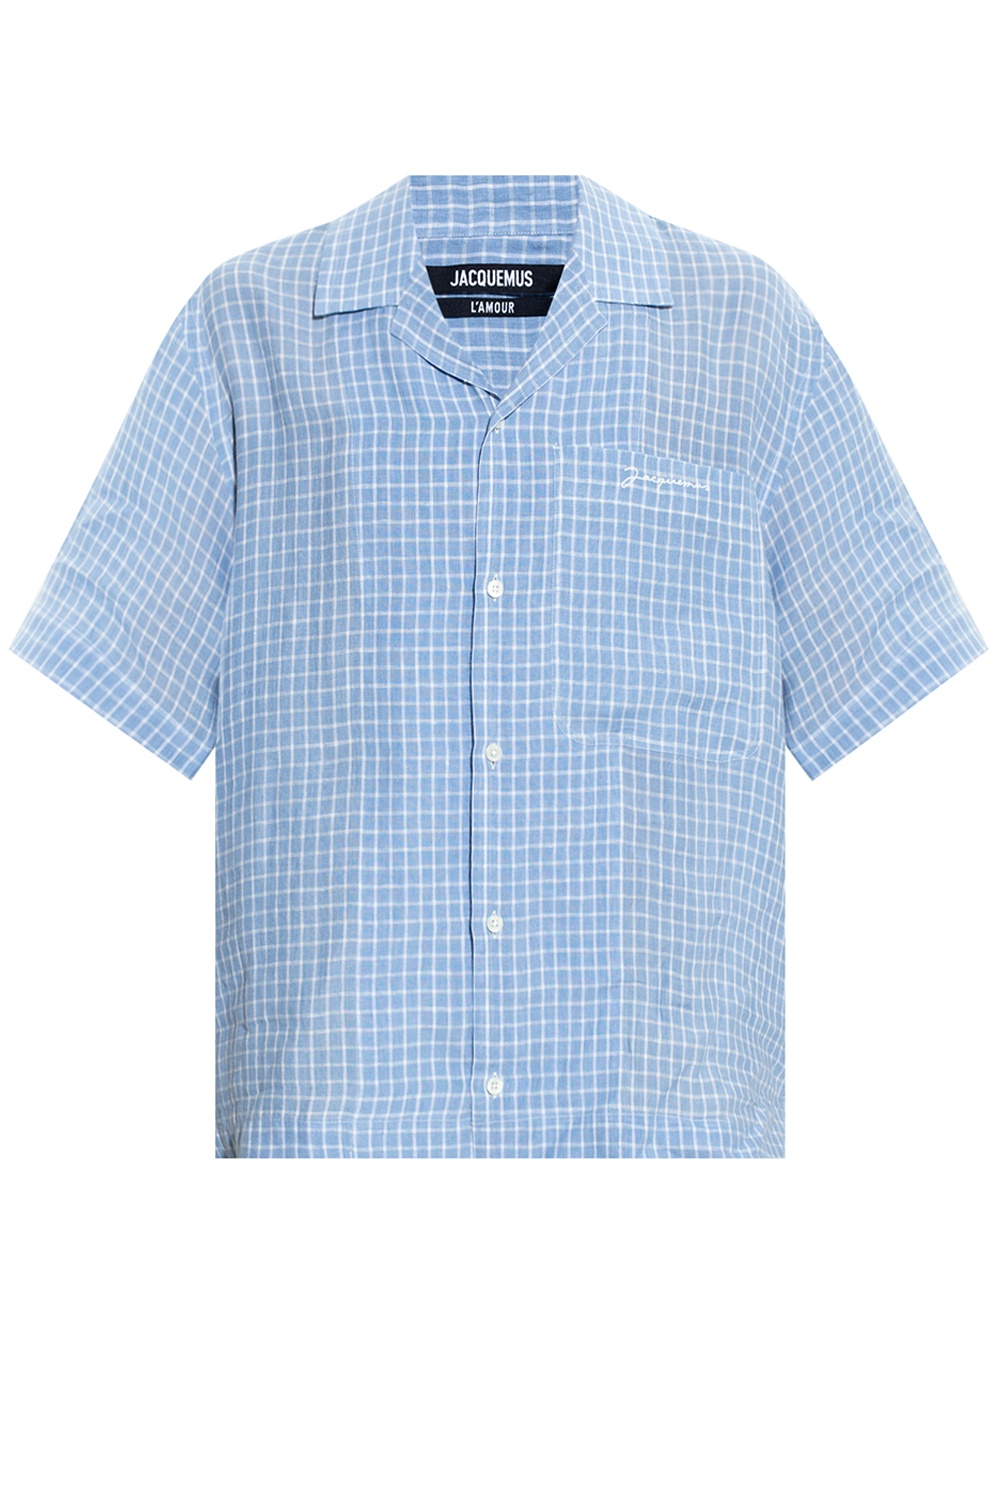 Jacquemus 'La Chemise Jean' shirt | Men's Clothing | Vitkac